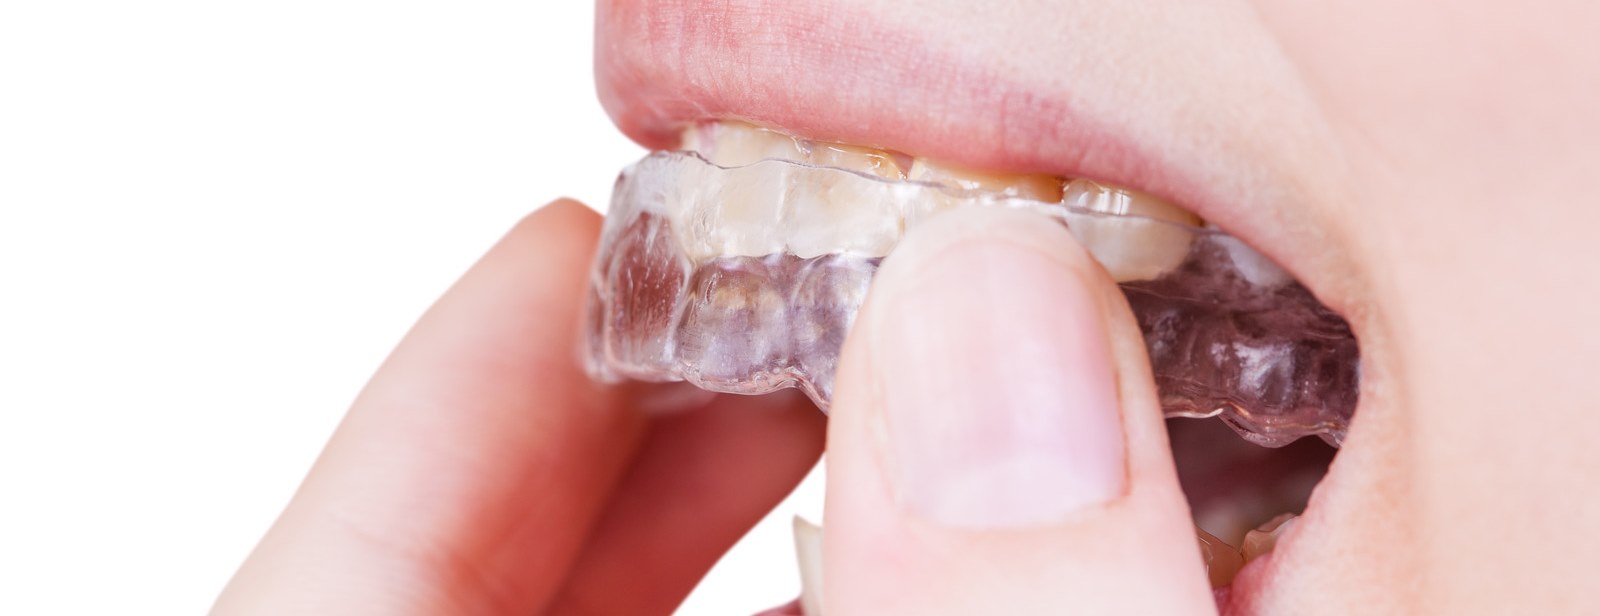 Ortodonzia Invisibile Centro Dentale Parmense | Dentisti in Parma: speciali mascherine dentali trasparenti rimovibili